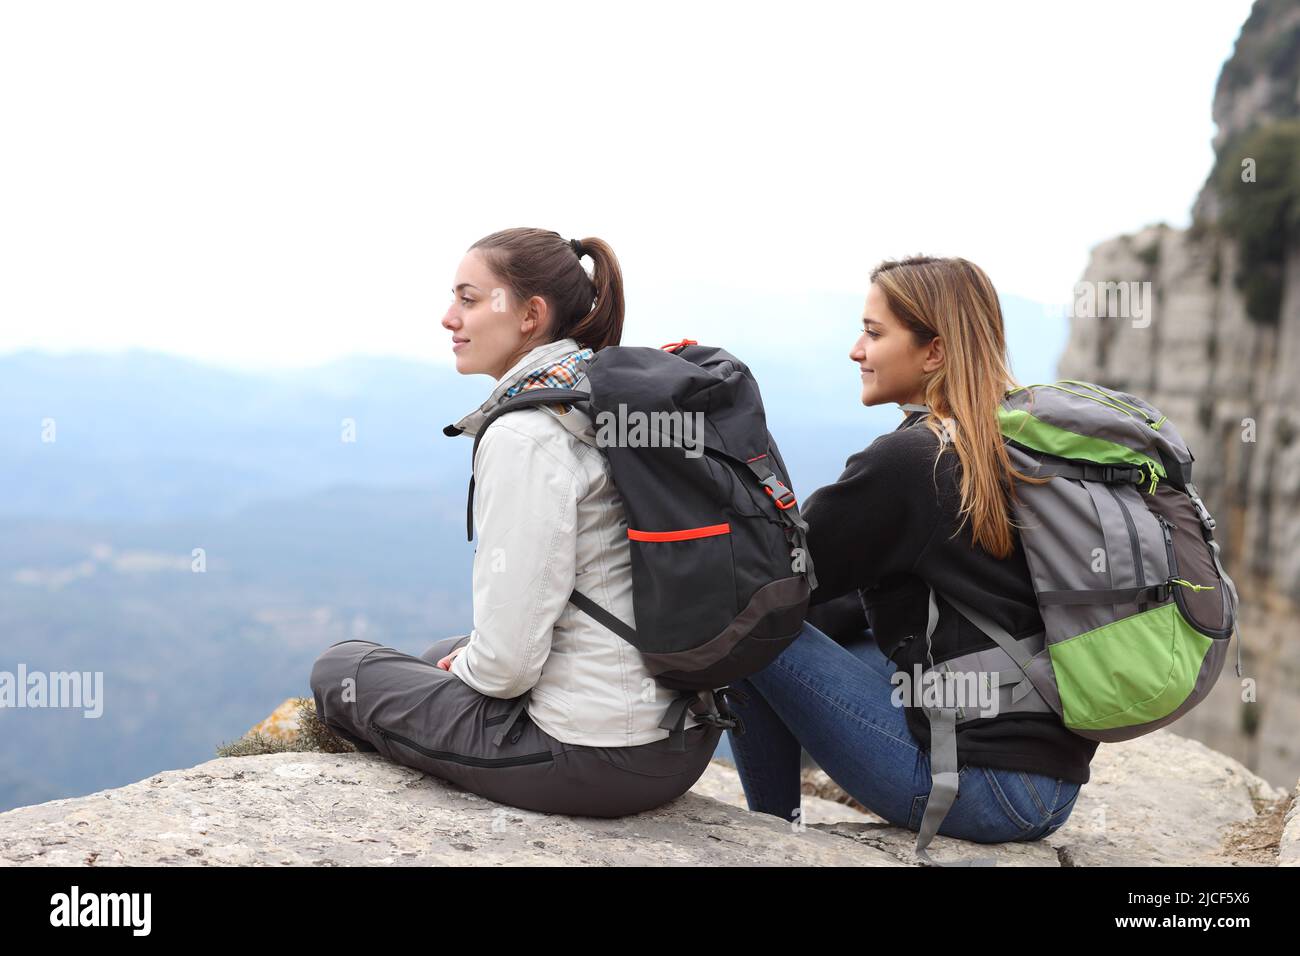 Zwei Rucksacktouristen betrachten die Aussicht auf einer Klippe in den Bergen Stockfoto